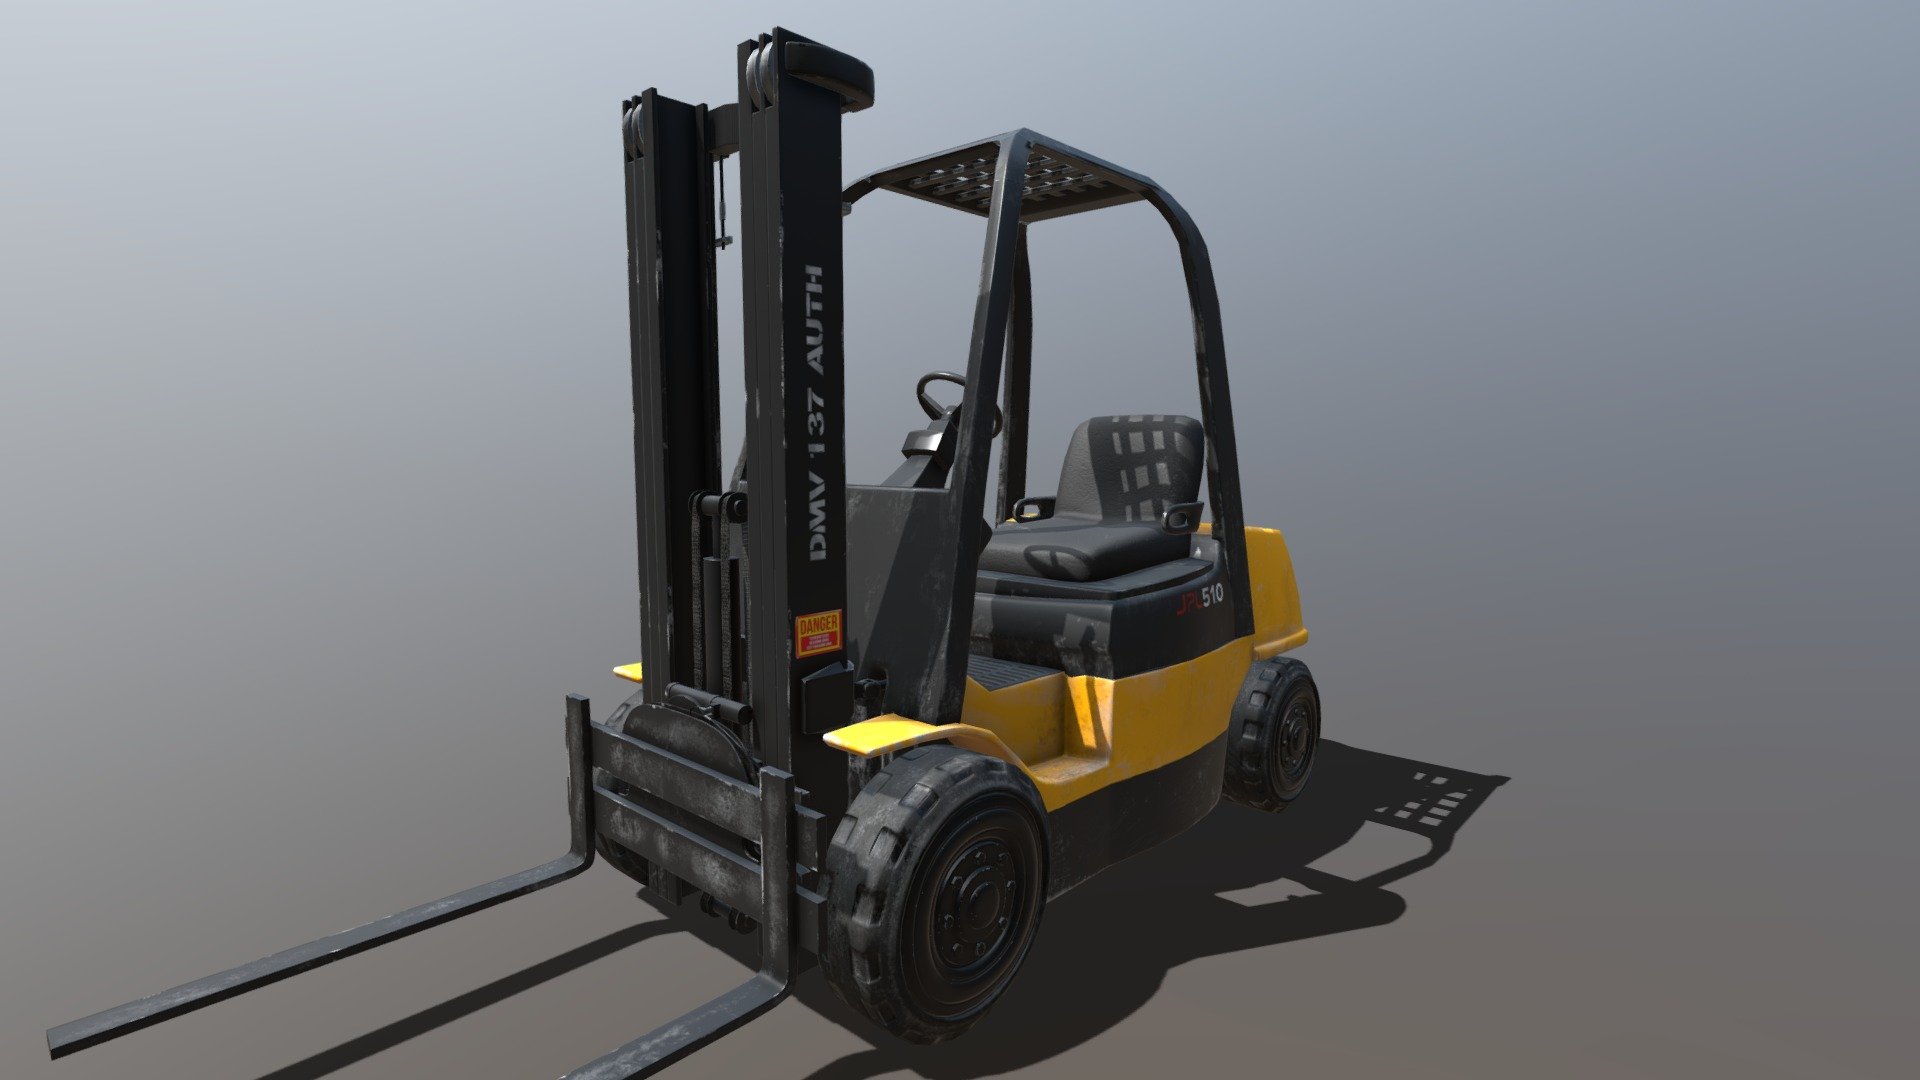 Forklift - 3D model by manG (@ngsw_jk) 3d model